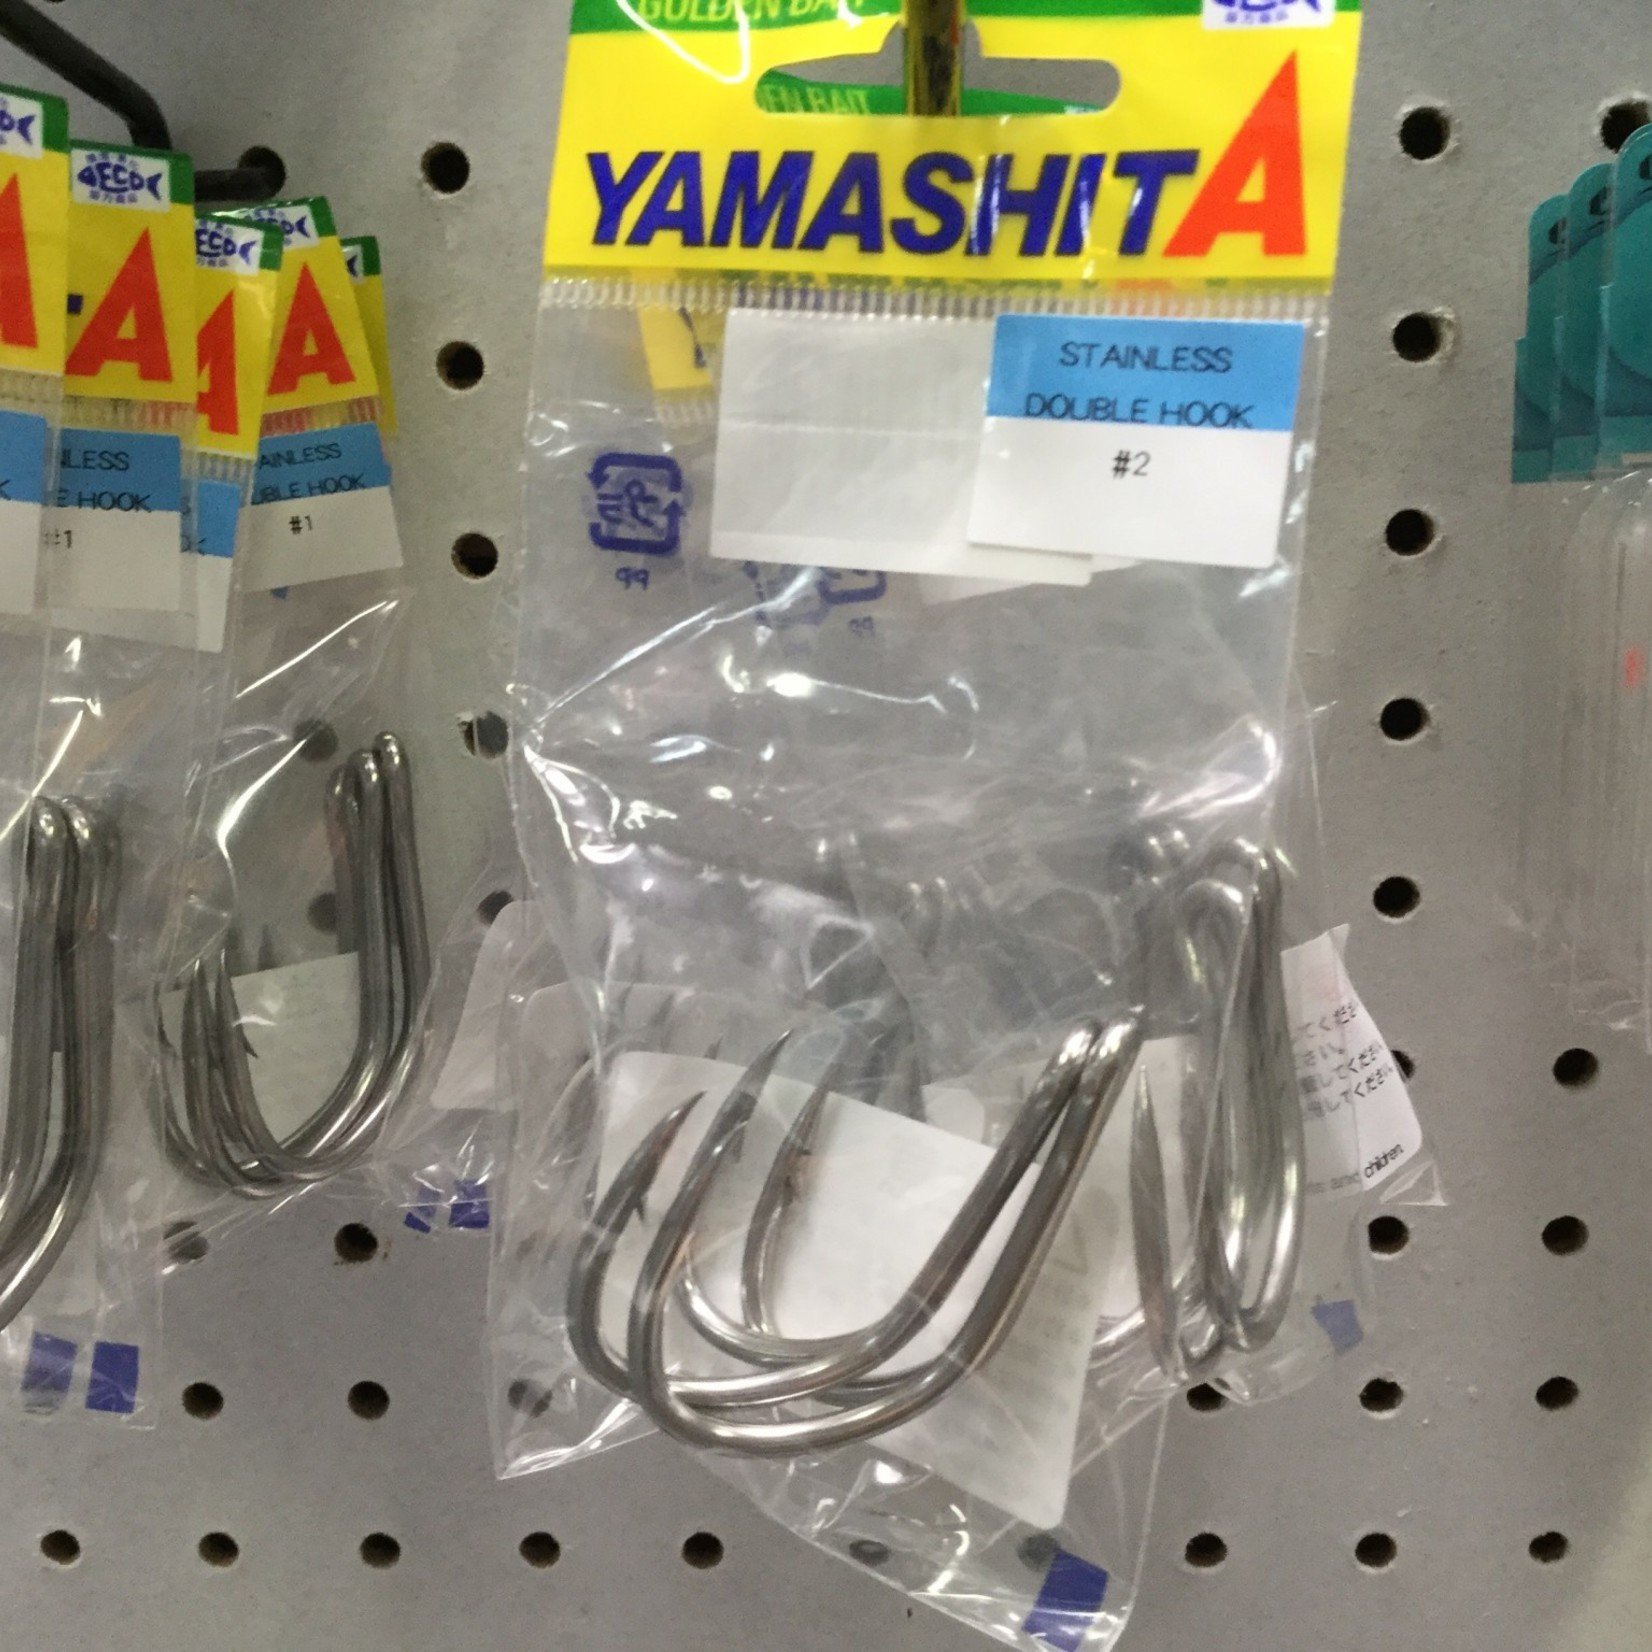 Yamashita Yamashita SS Double Hook